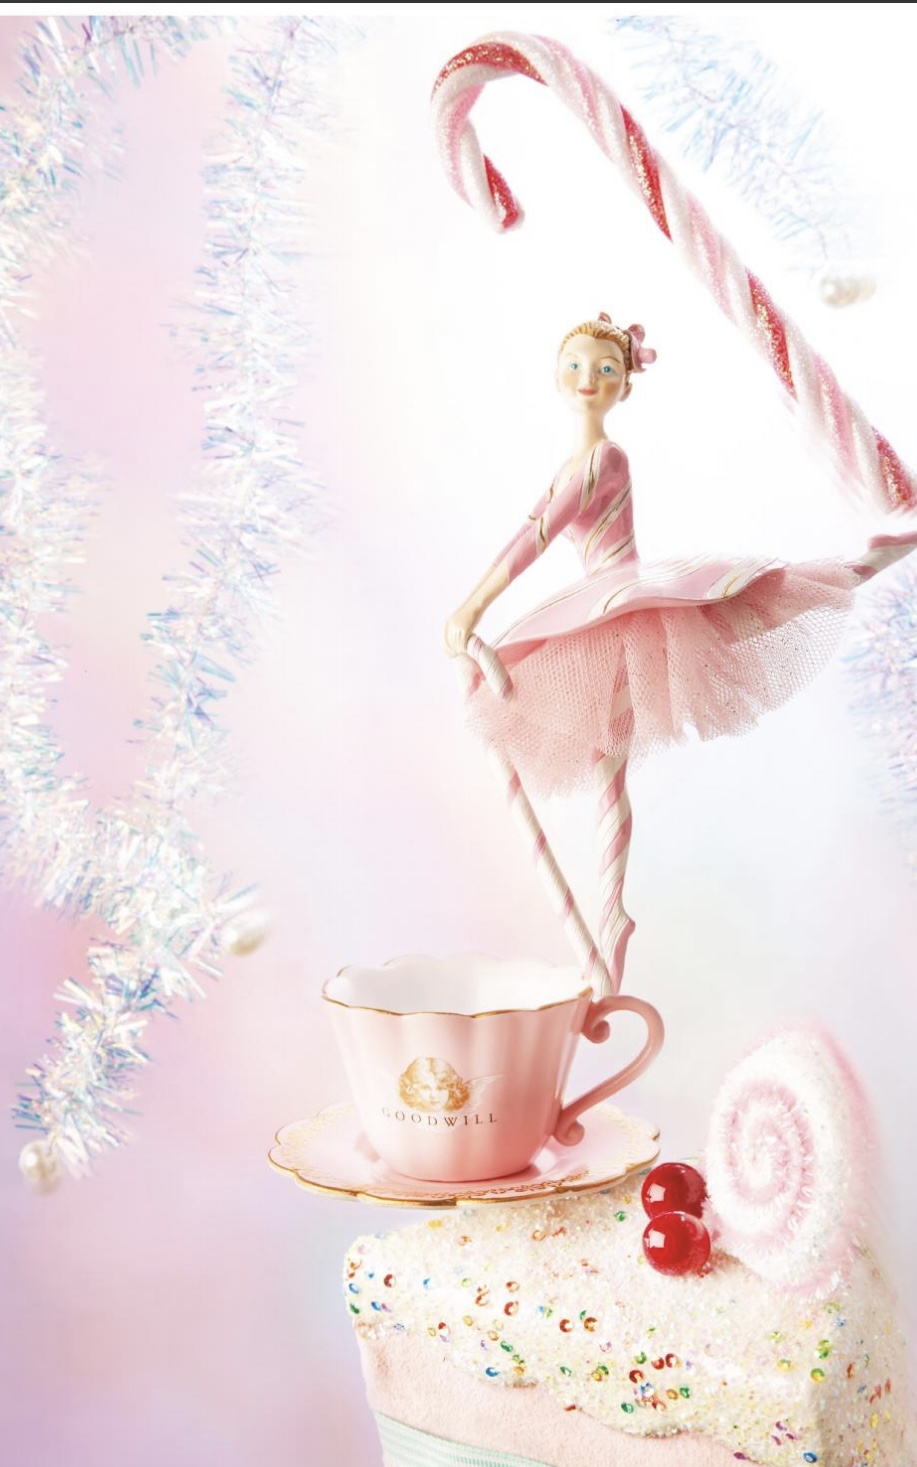 Decoro candy ballerina - modelli assortiti - h. 15.5 cm - Goodwill